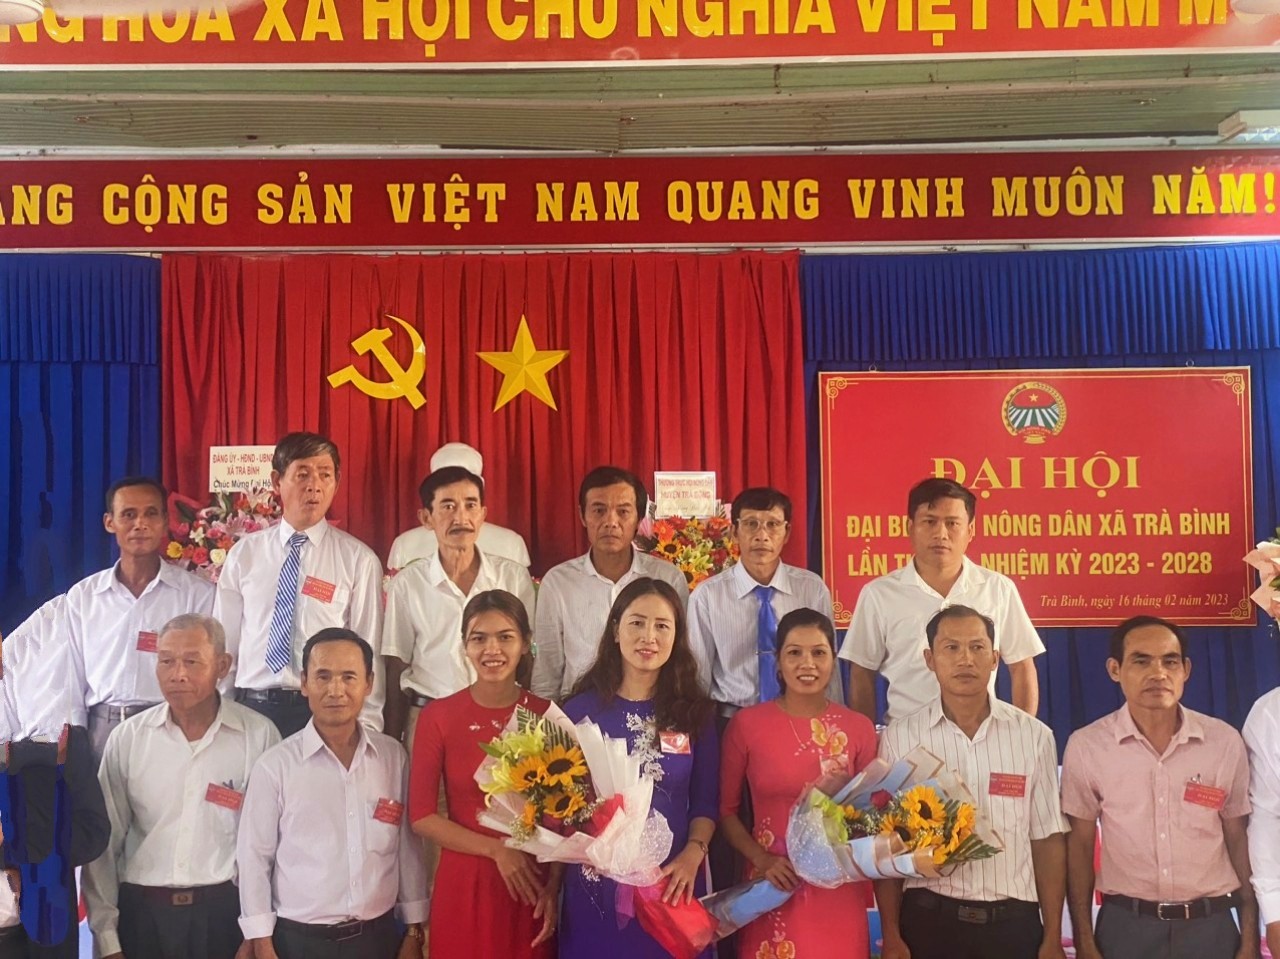 Hội Nông dân (HND) xã Trà Bình đã tổ chức Đại hội đại biểu nhiệm kỳ 2023-2028